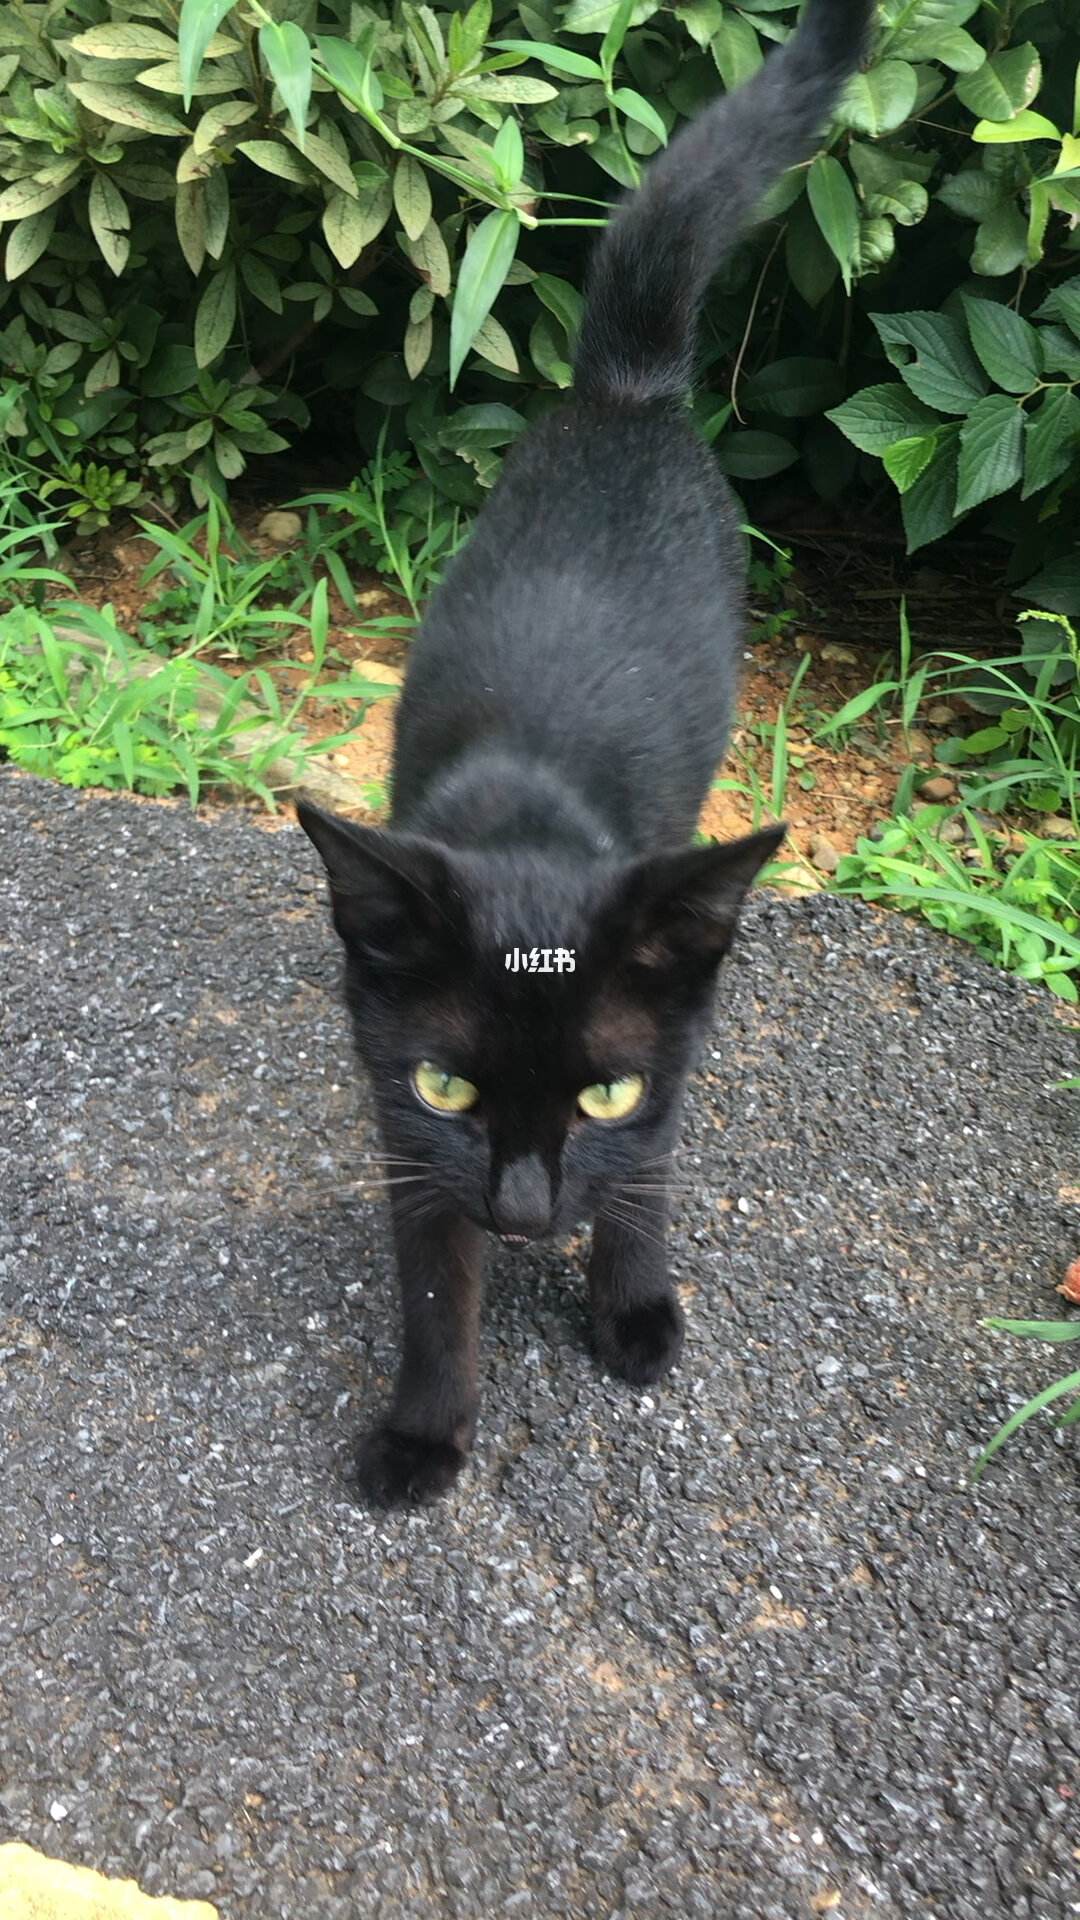 估计三四个月大是否有人爱心喂养,我前几天散步偶然发现大黑猫很亲人